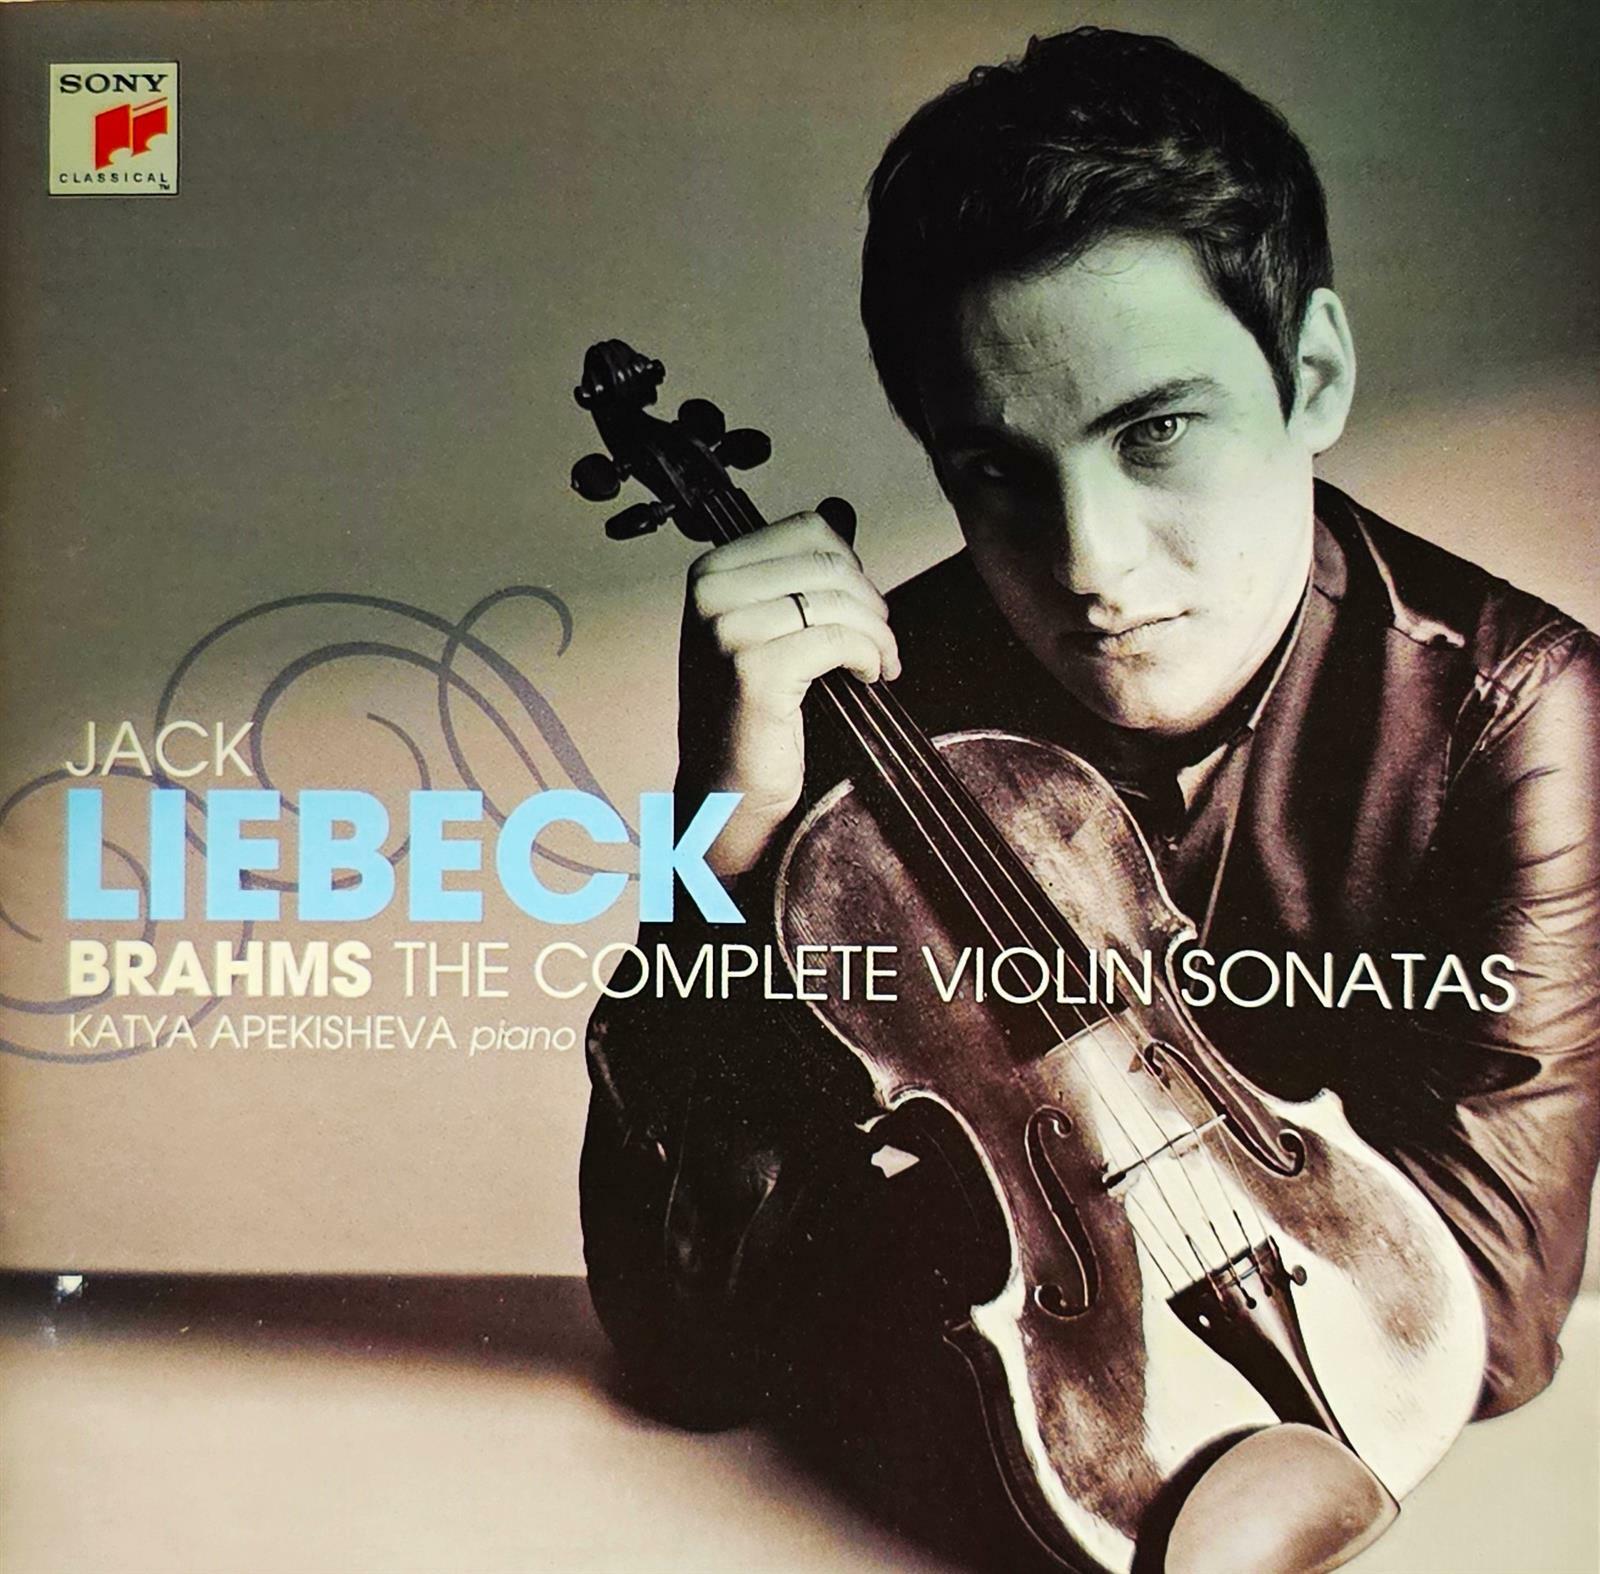 [중고] [수입] Brahms : The Complete Violin Sonatas by Jack Liebeck (Violin) & Katya Apekisheva (Piano) [SONY]